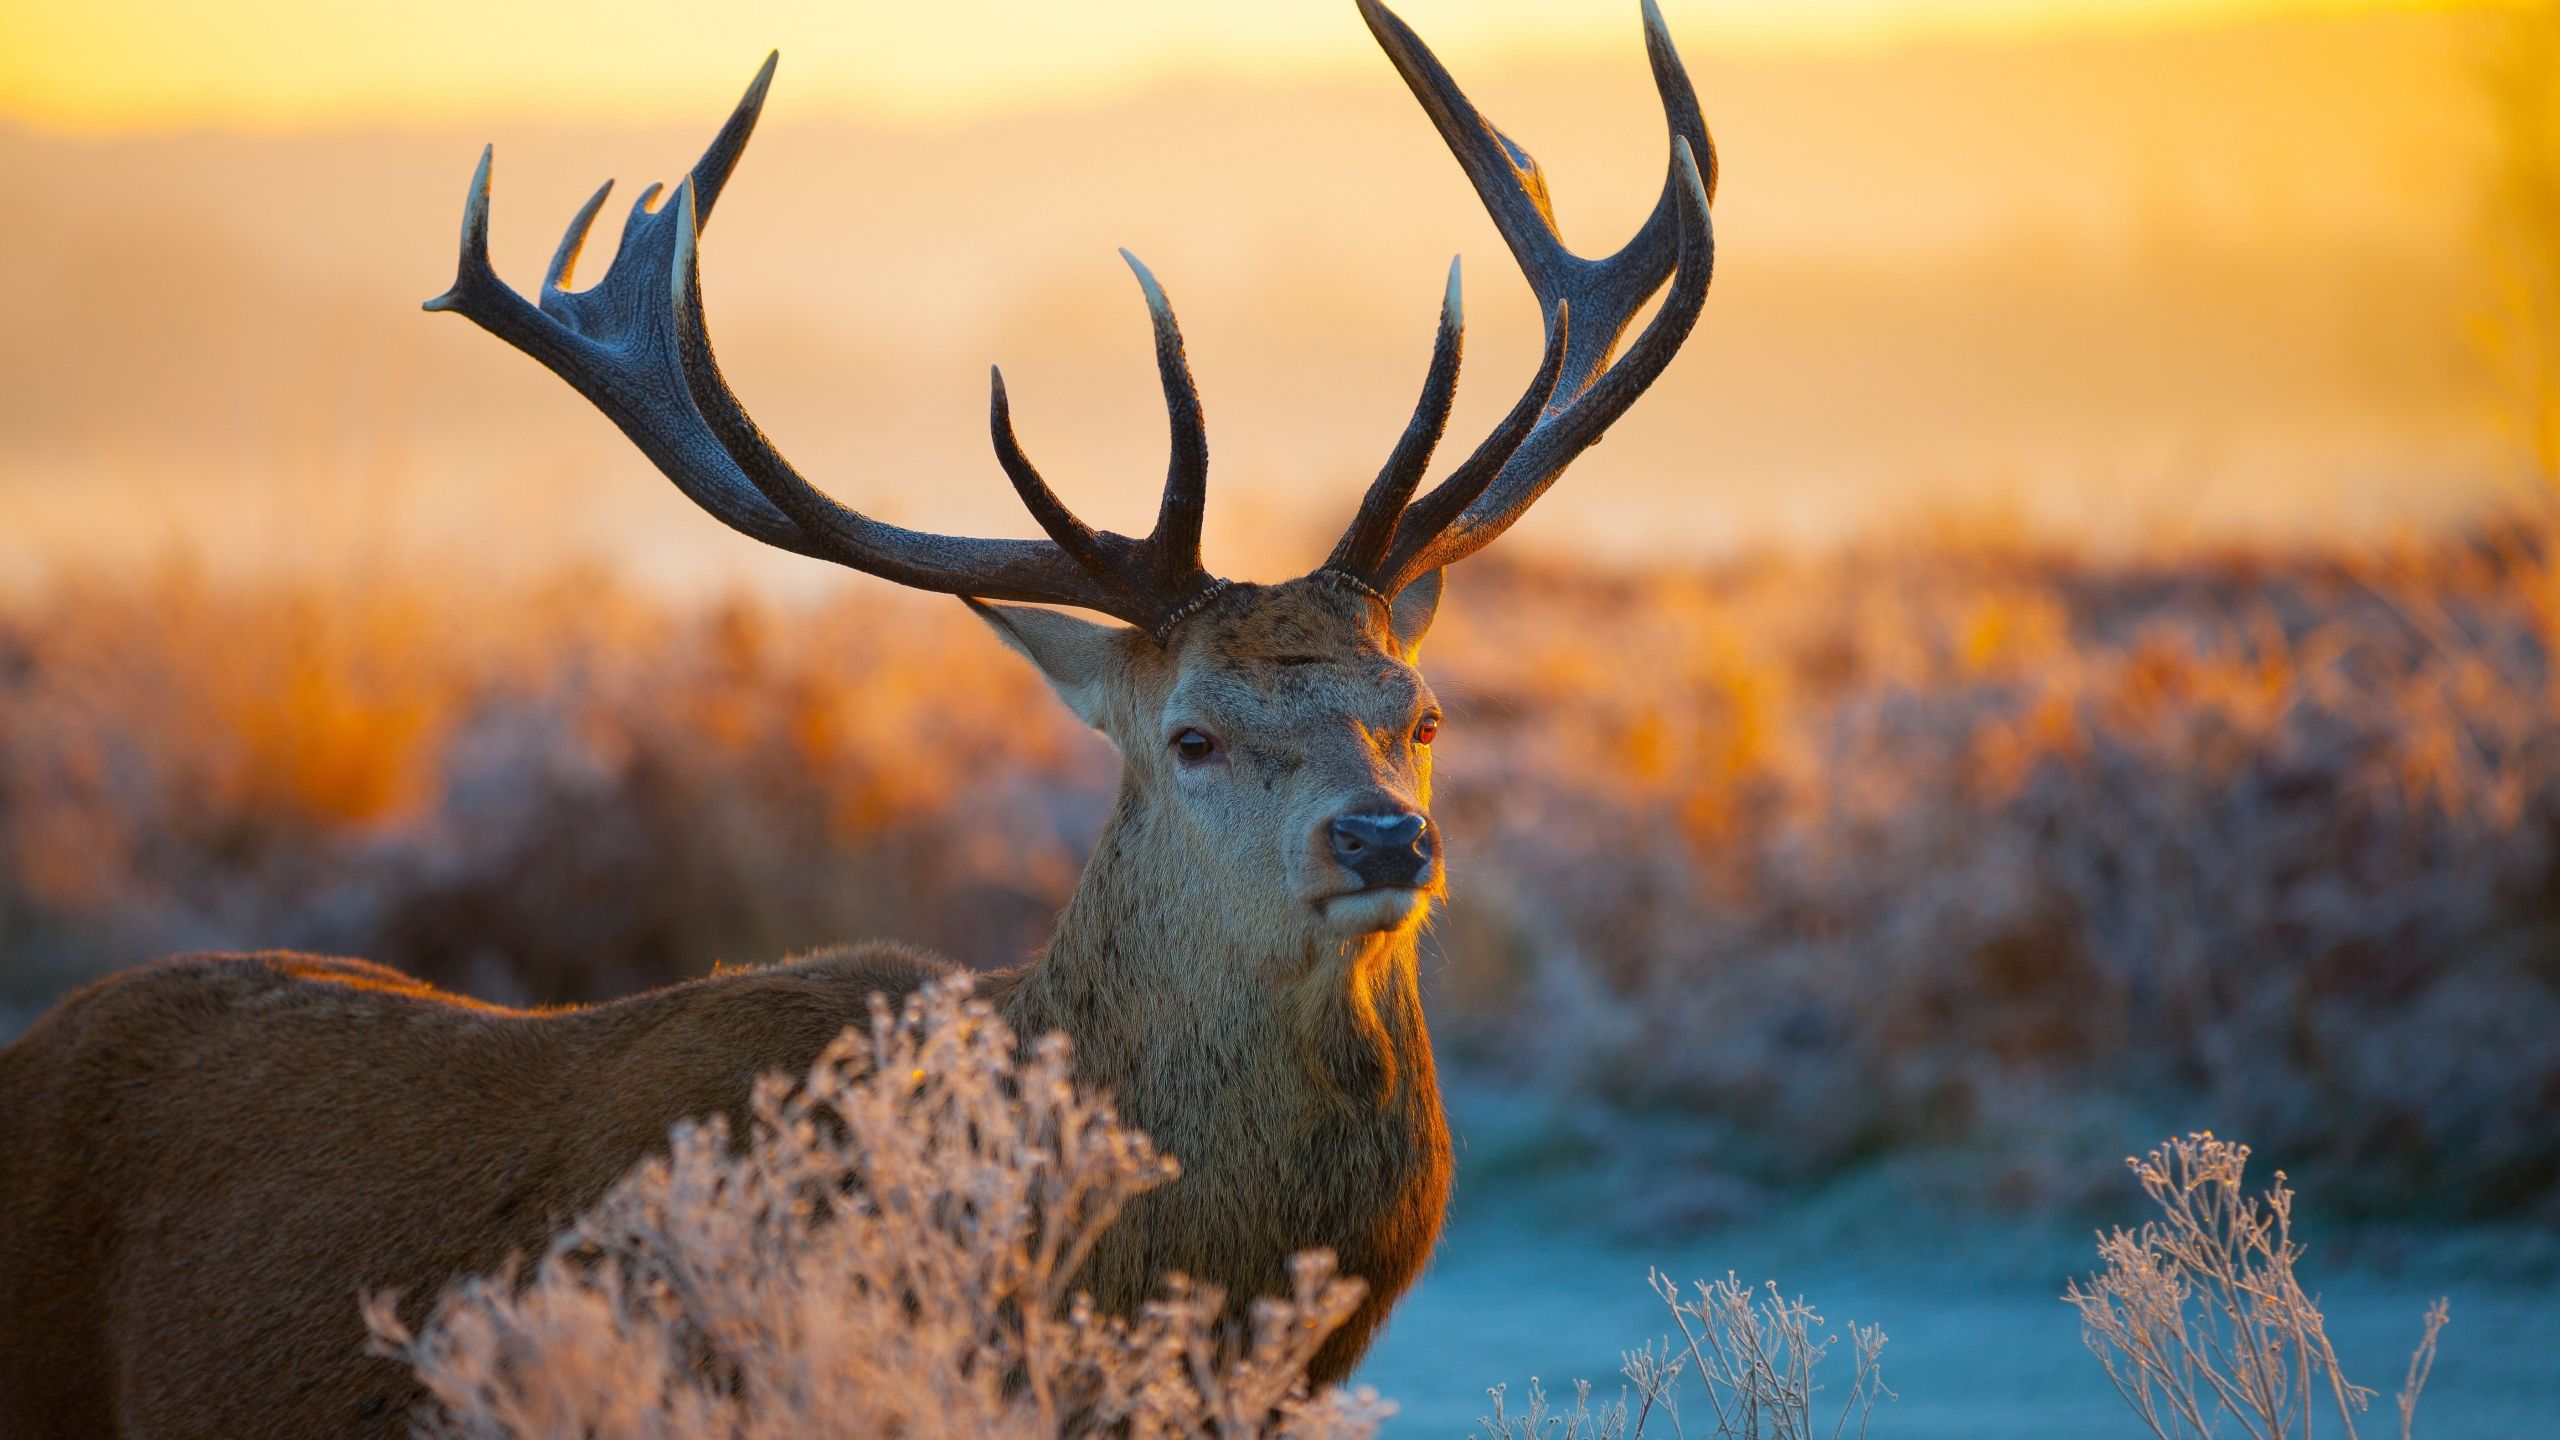 Download Deer, savanna, sunset, cute animals Widescreen 4:3 wallpaper 2560x1440